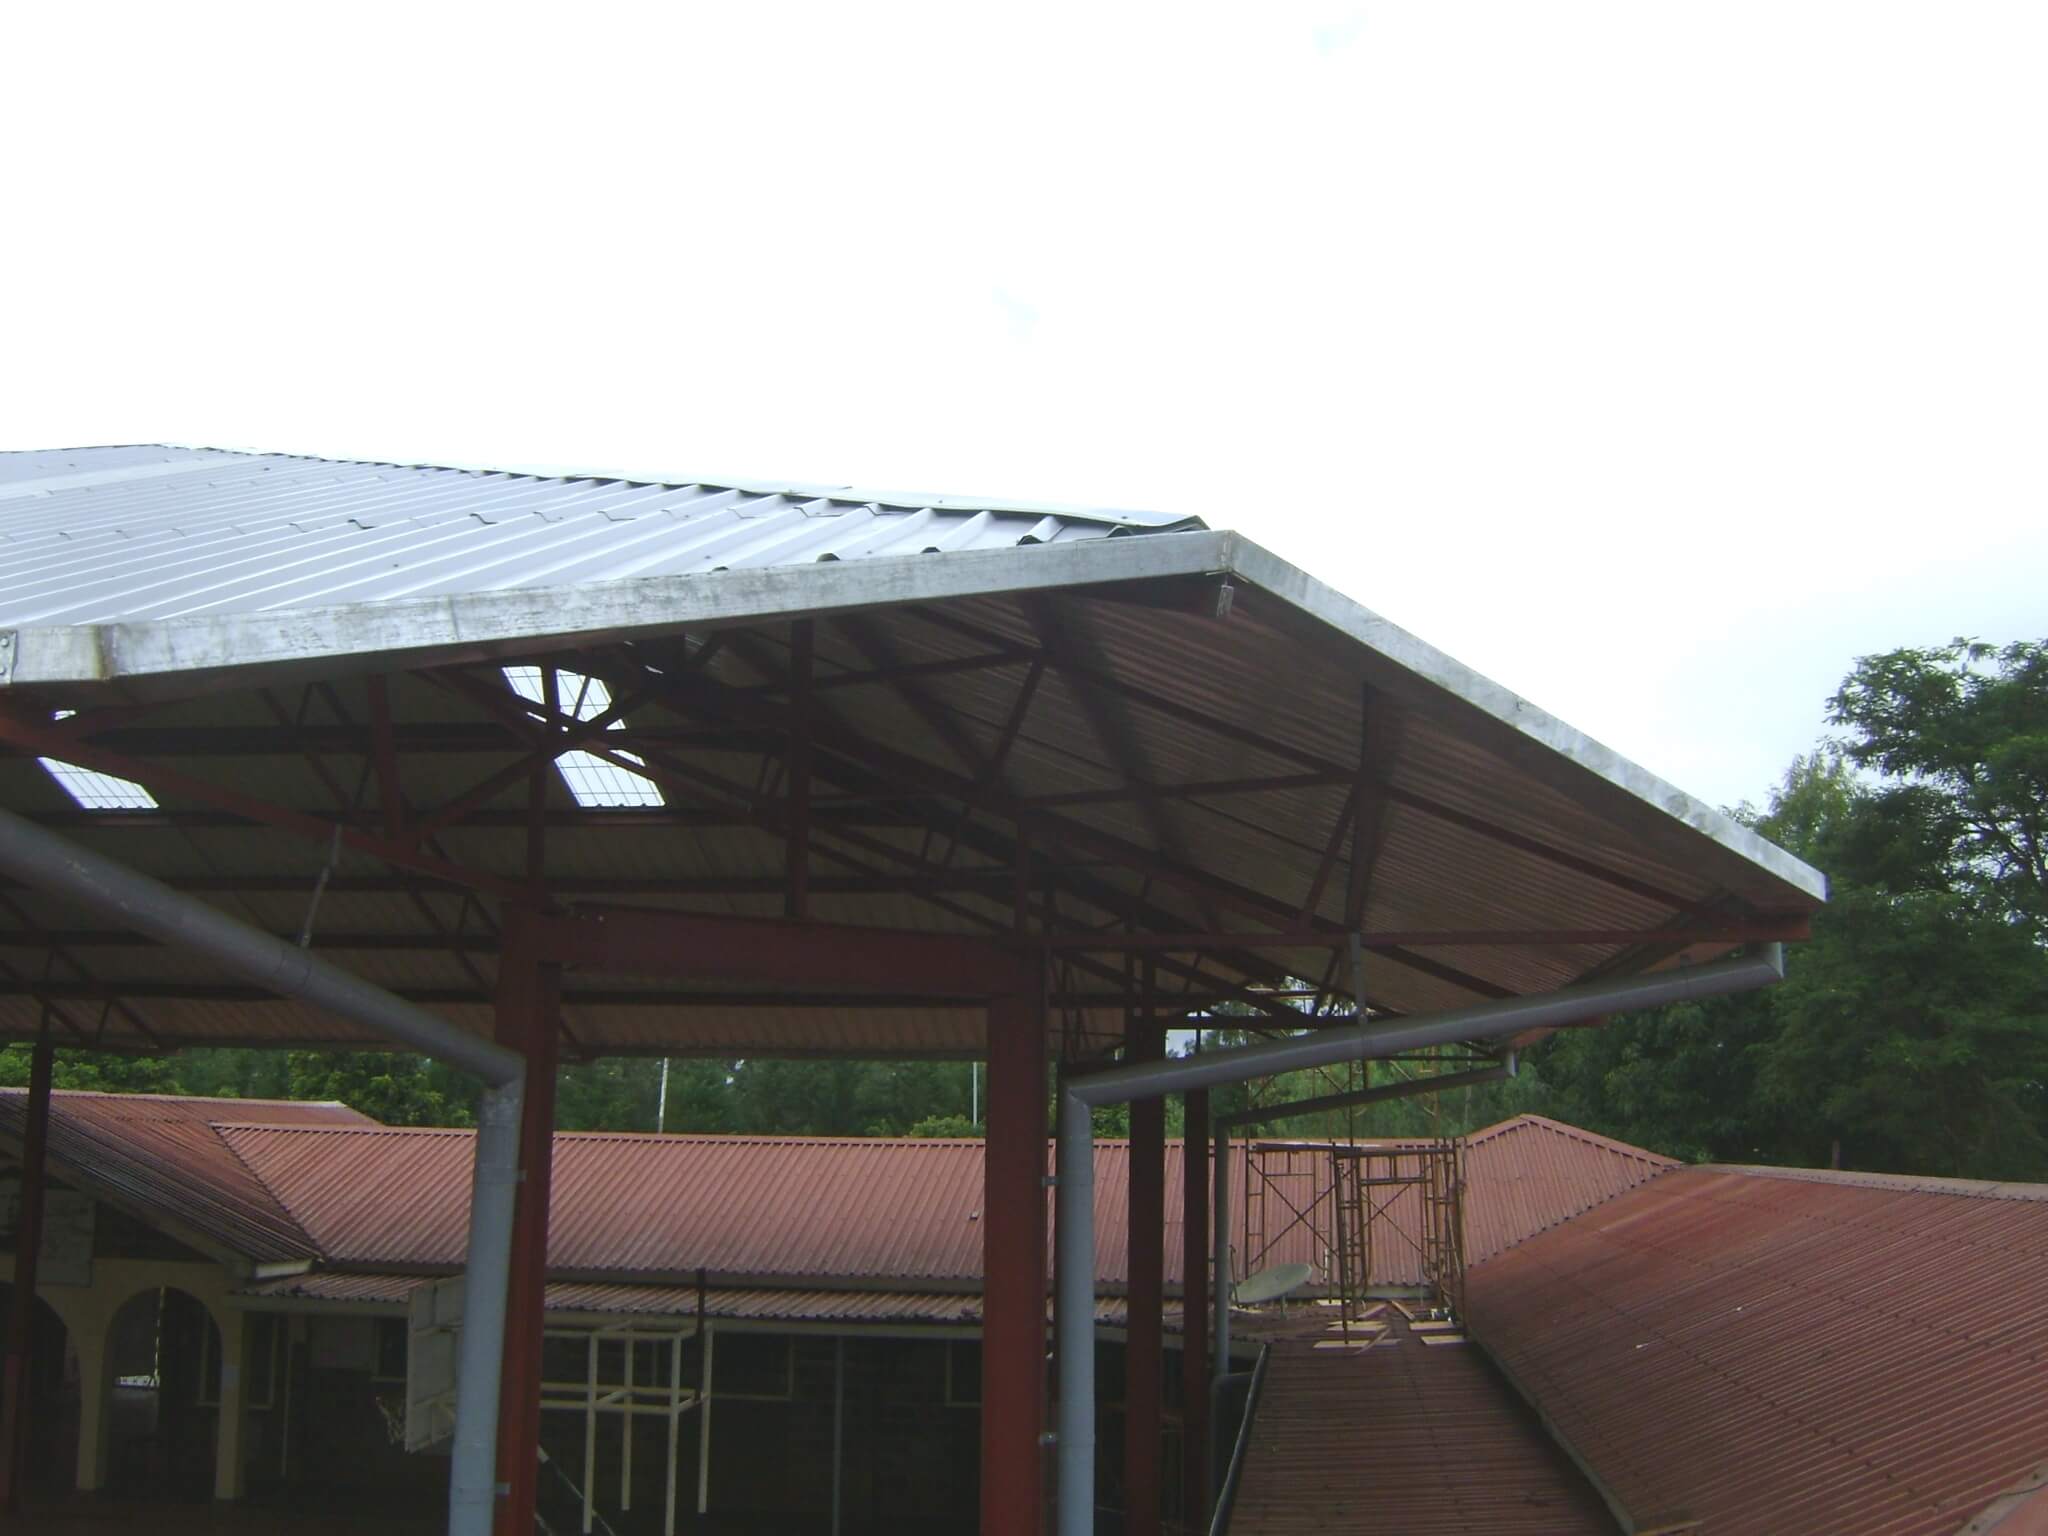 School Roof shed and Pillar in karen,Kenya